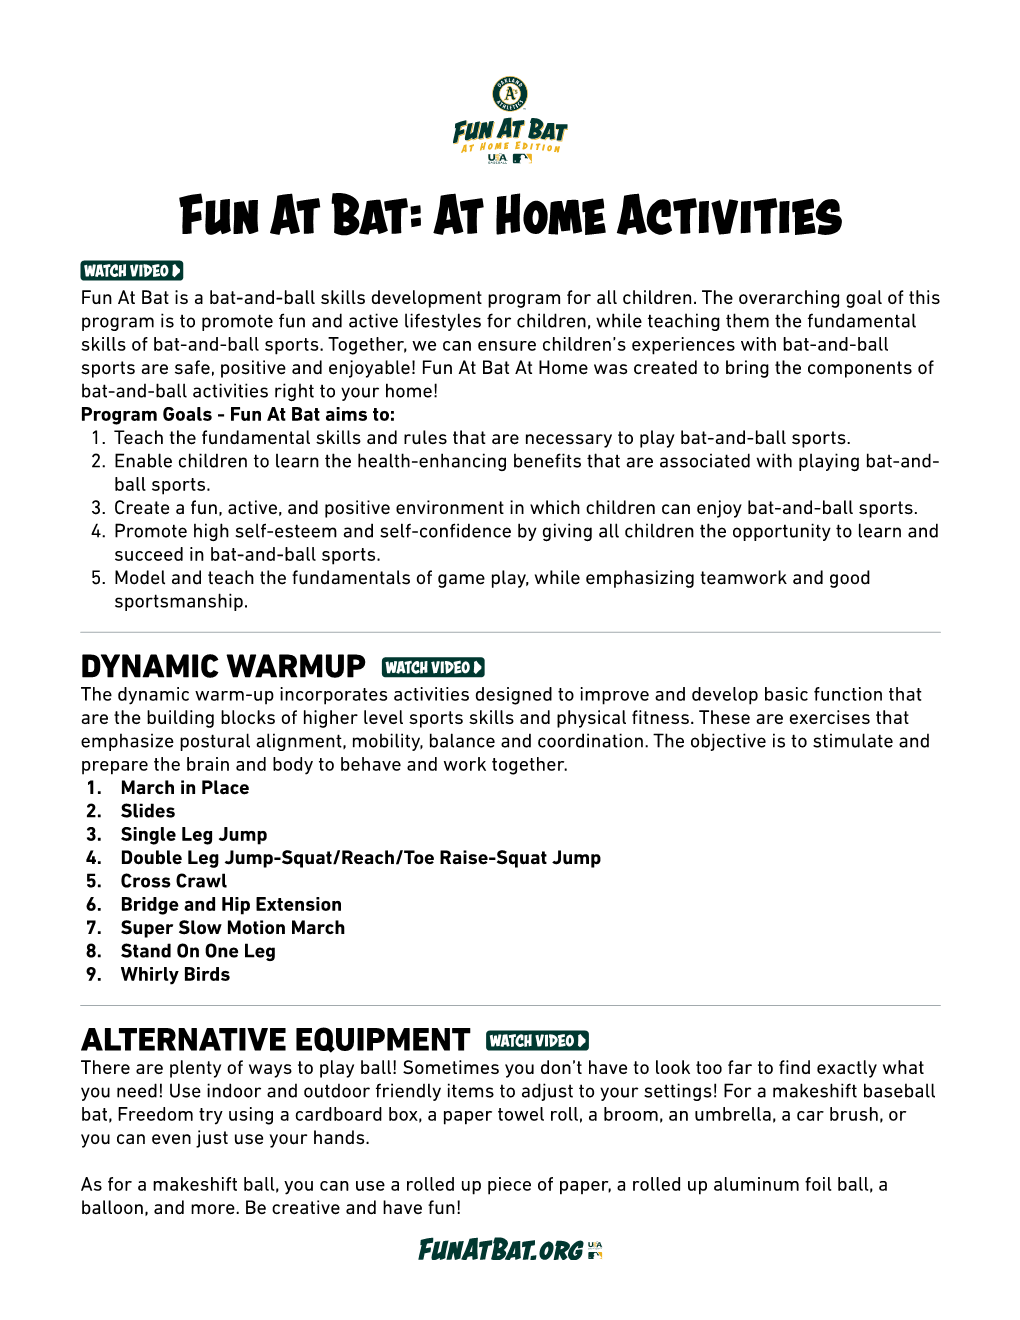 Fun at Bat: at Home Activities